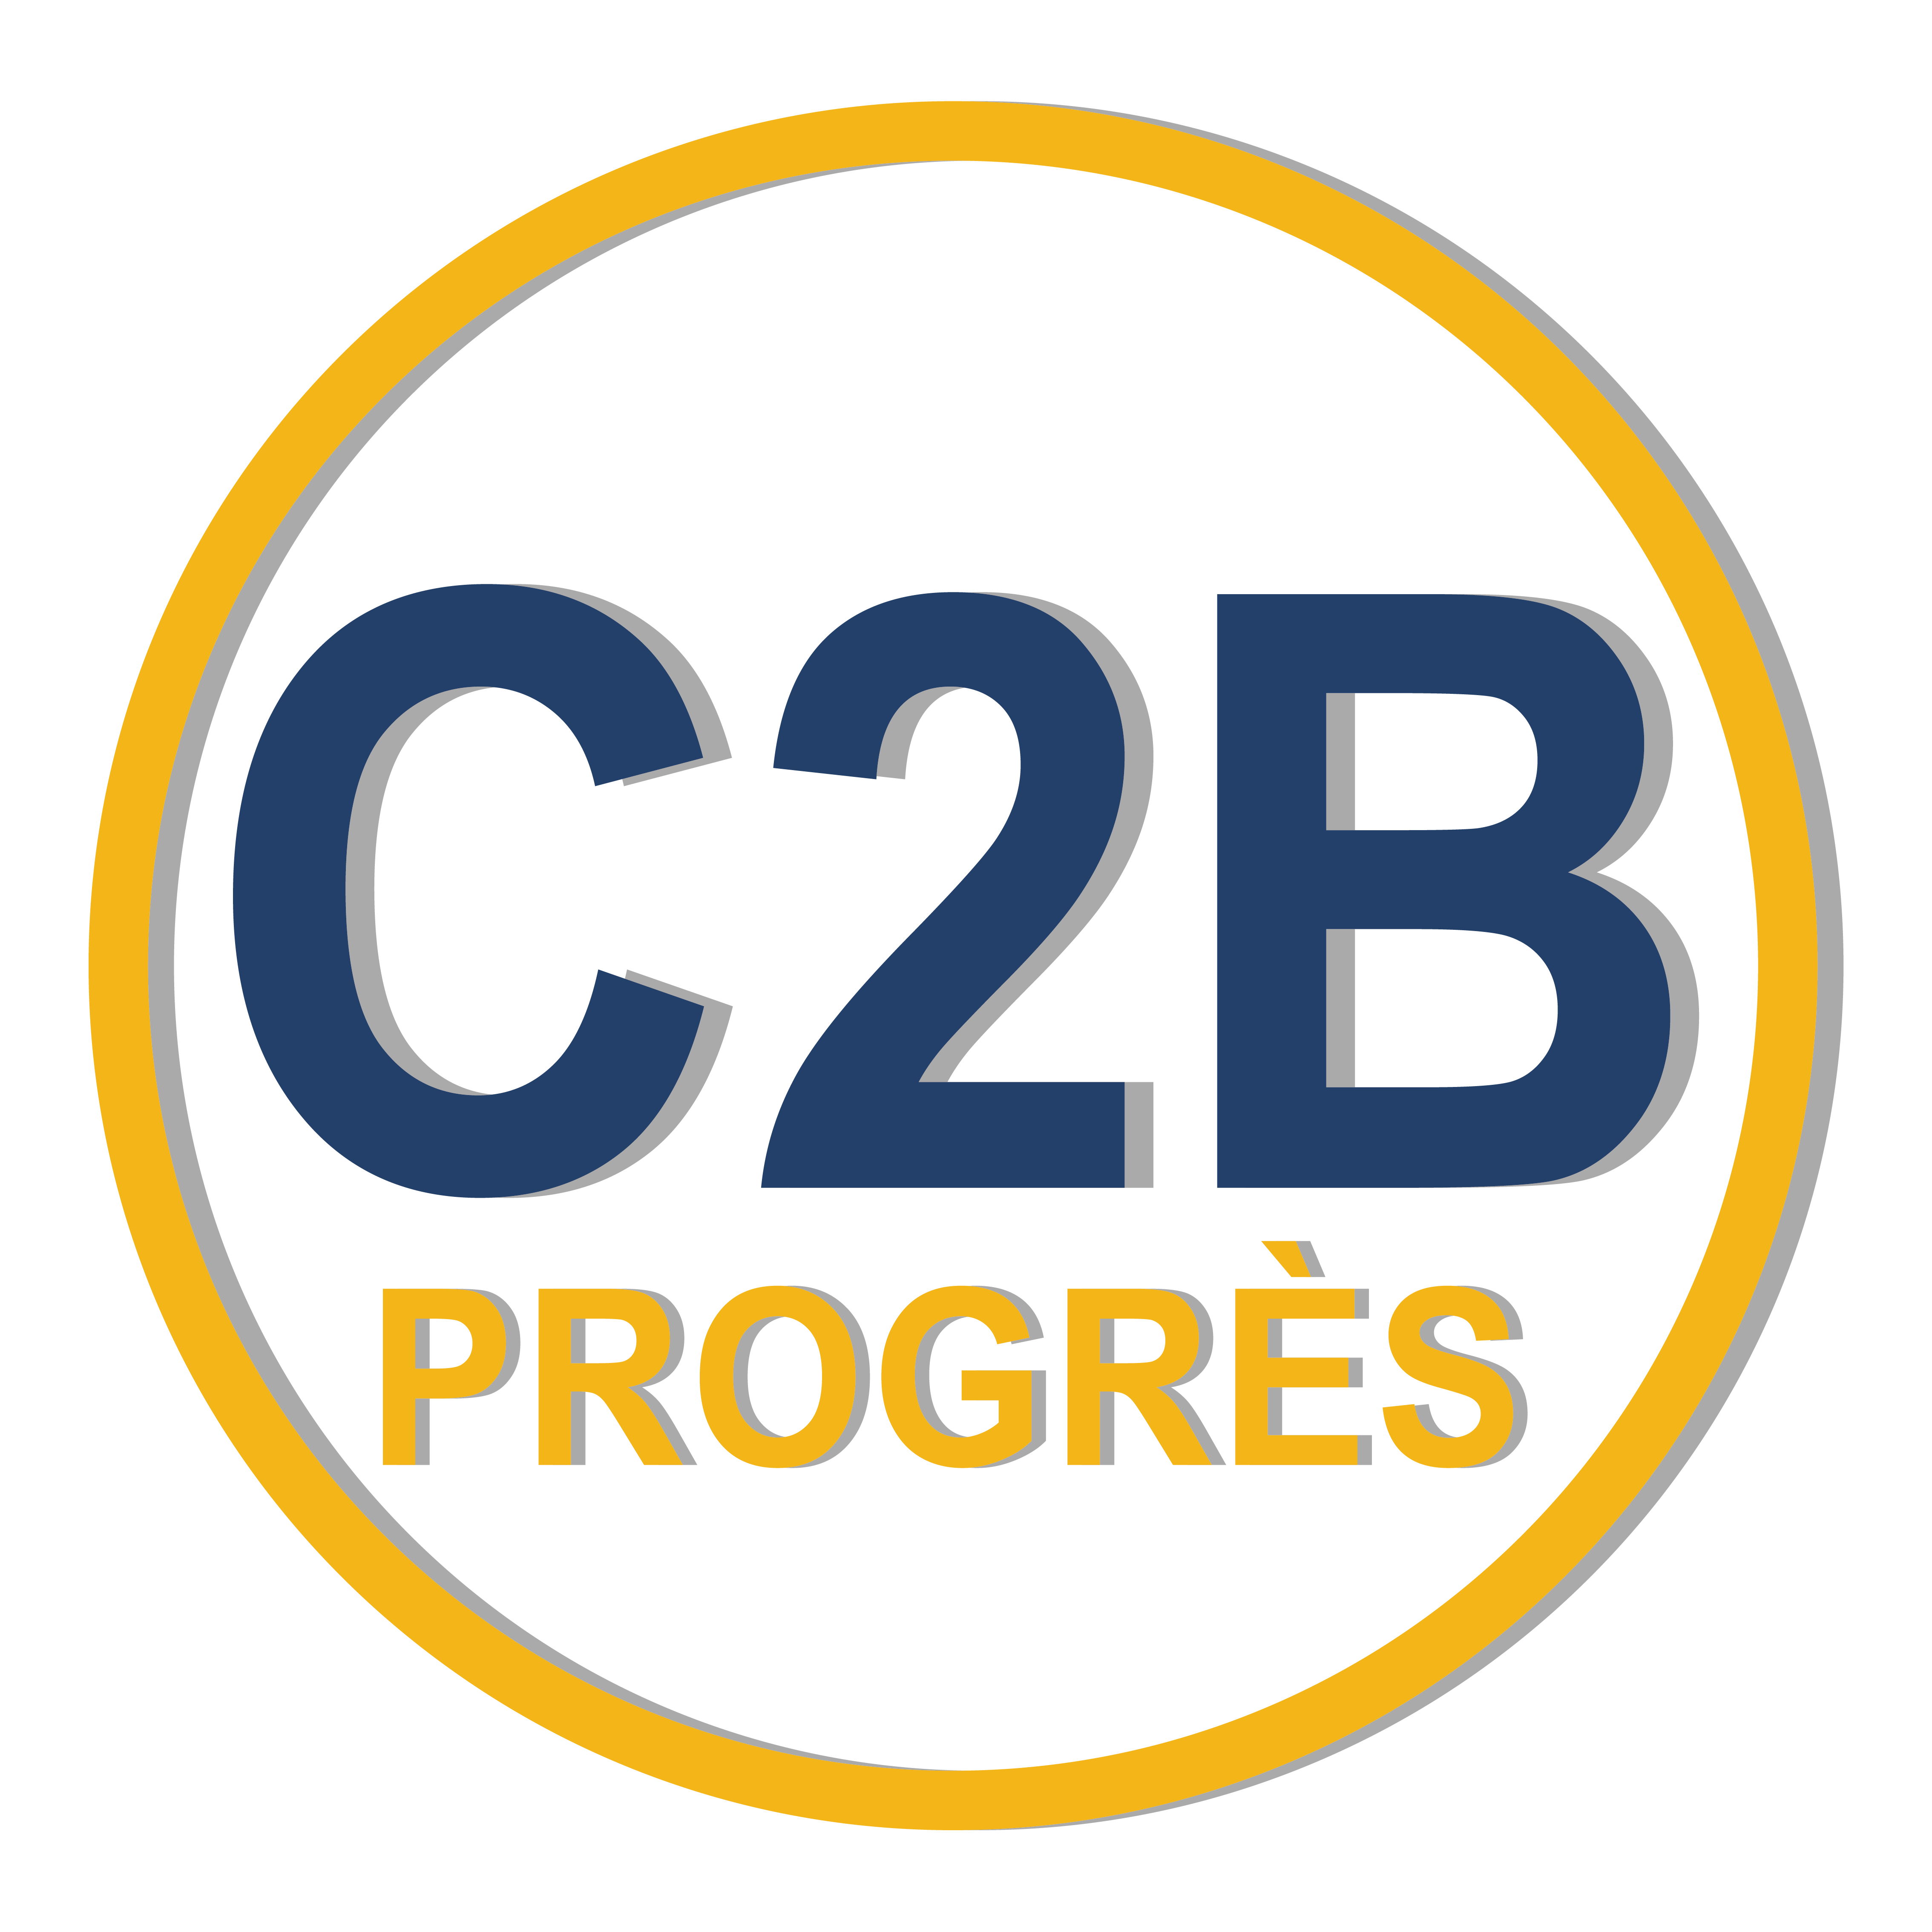 C2B Progrès